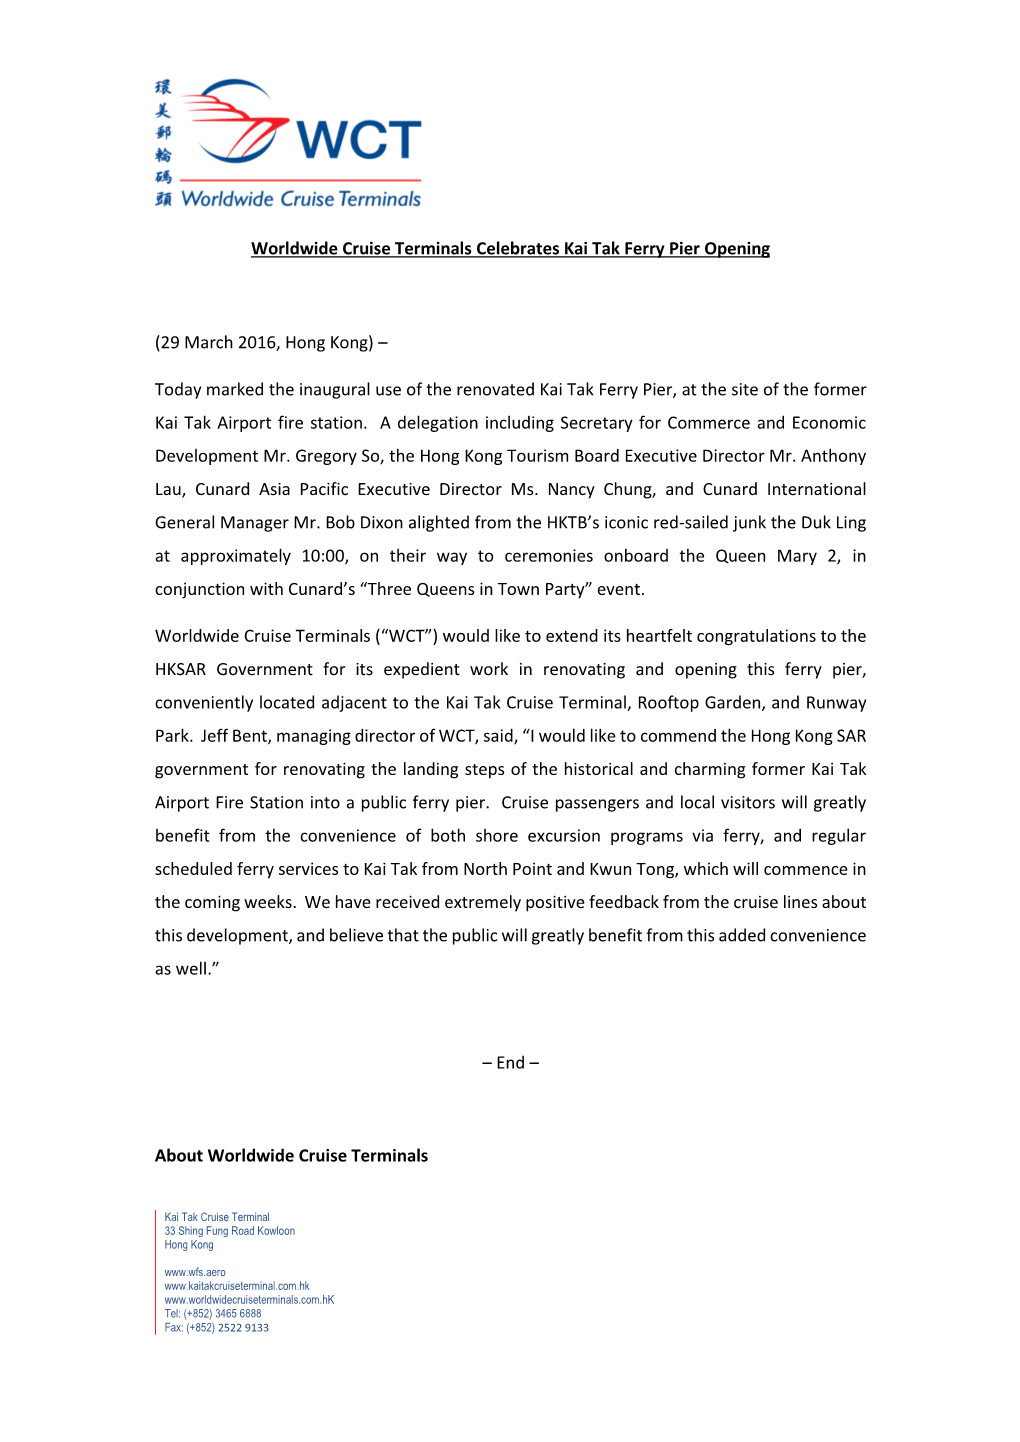 WCT Celebrates Kai Tak Ferry Pier Opening Press Release